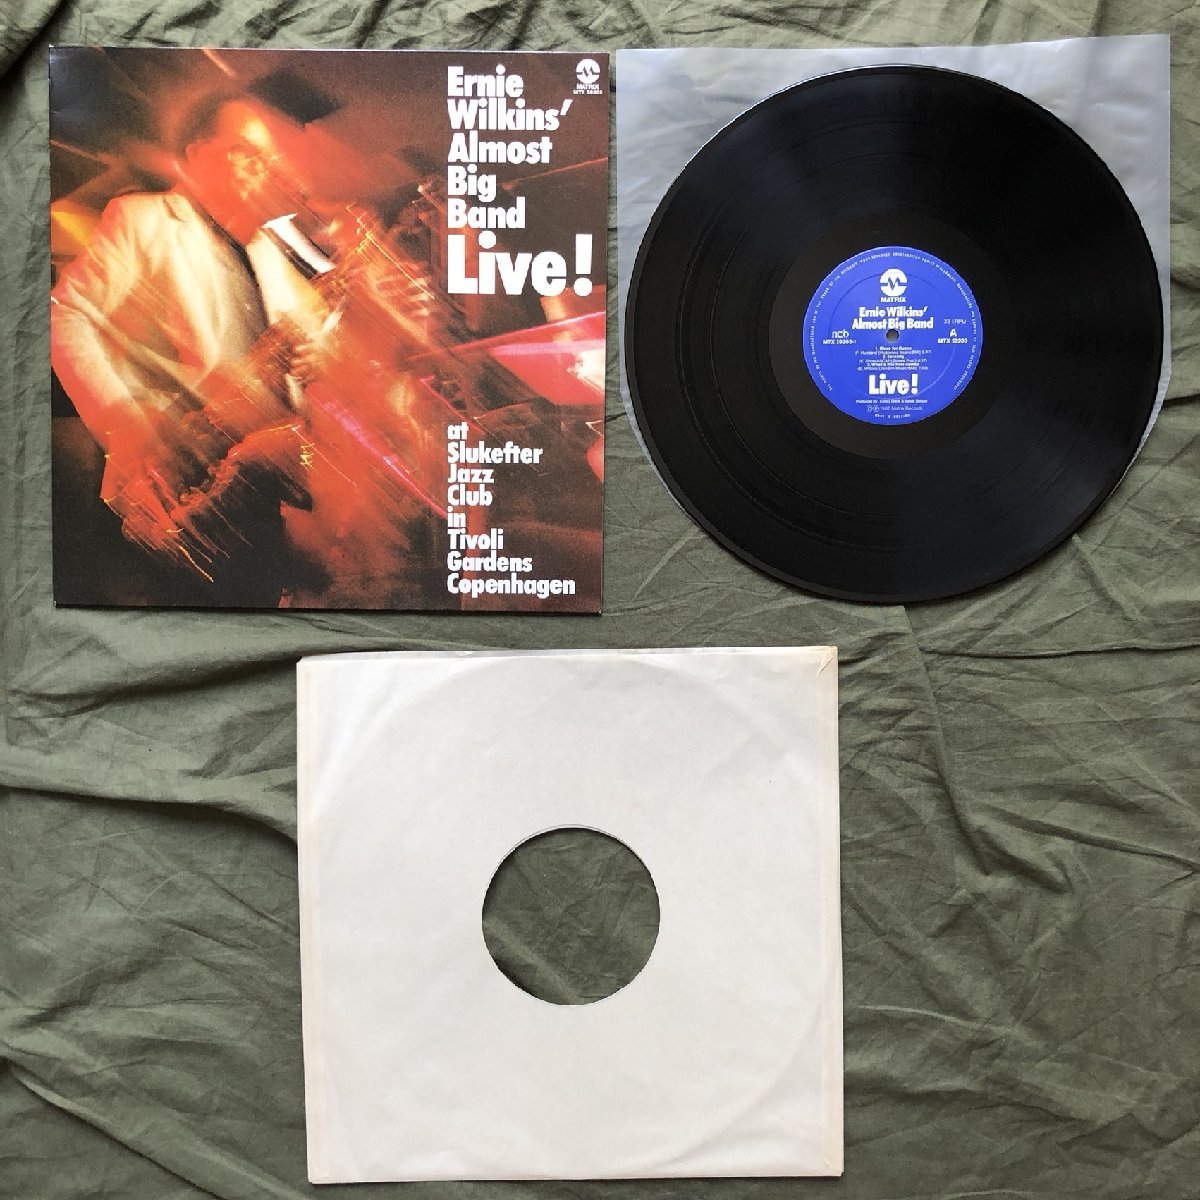 原信夫Collection 傷なし美盤 1982年 オランダ盤 オリジナルリリース盤 LPレコード Ernie Wilkins' Almost Big Band Live! Copenhagen_画像5